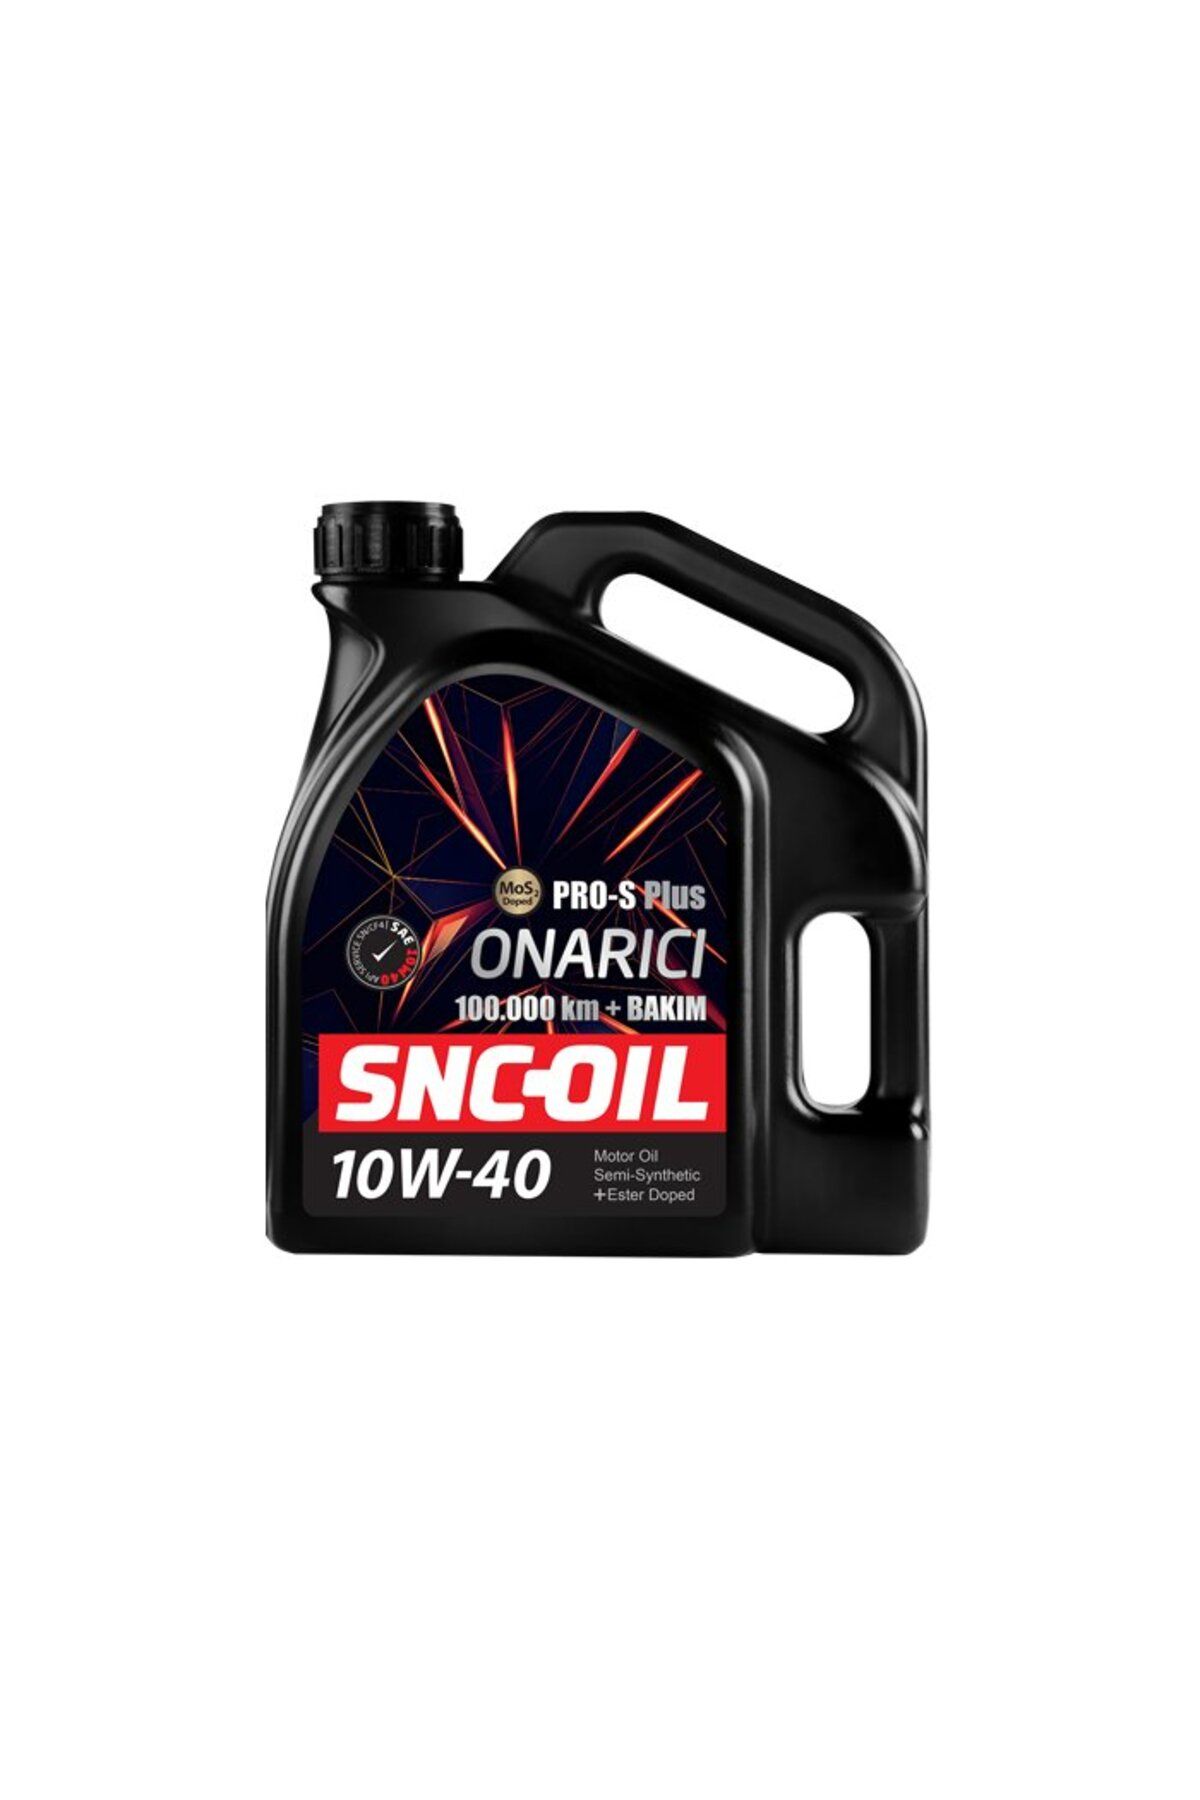 snc ICON GROUP - SNC-OIL 100.000 Km + Bakım Pro-S Plus Onarıcı 10W-40 Motor Yağı 4 Lt